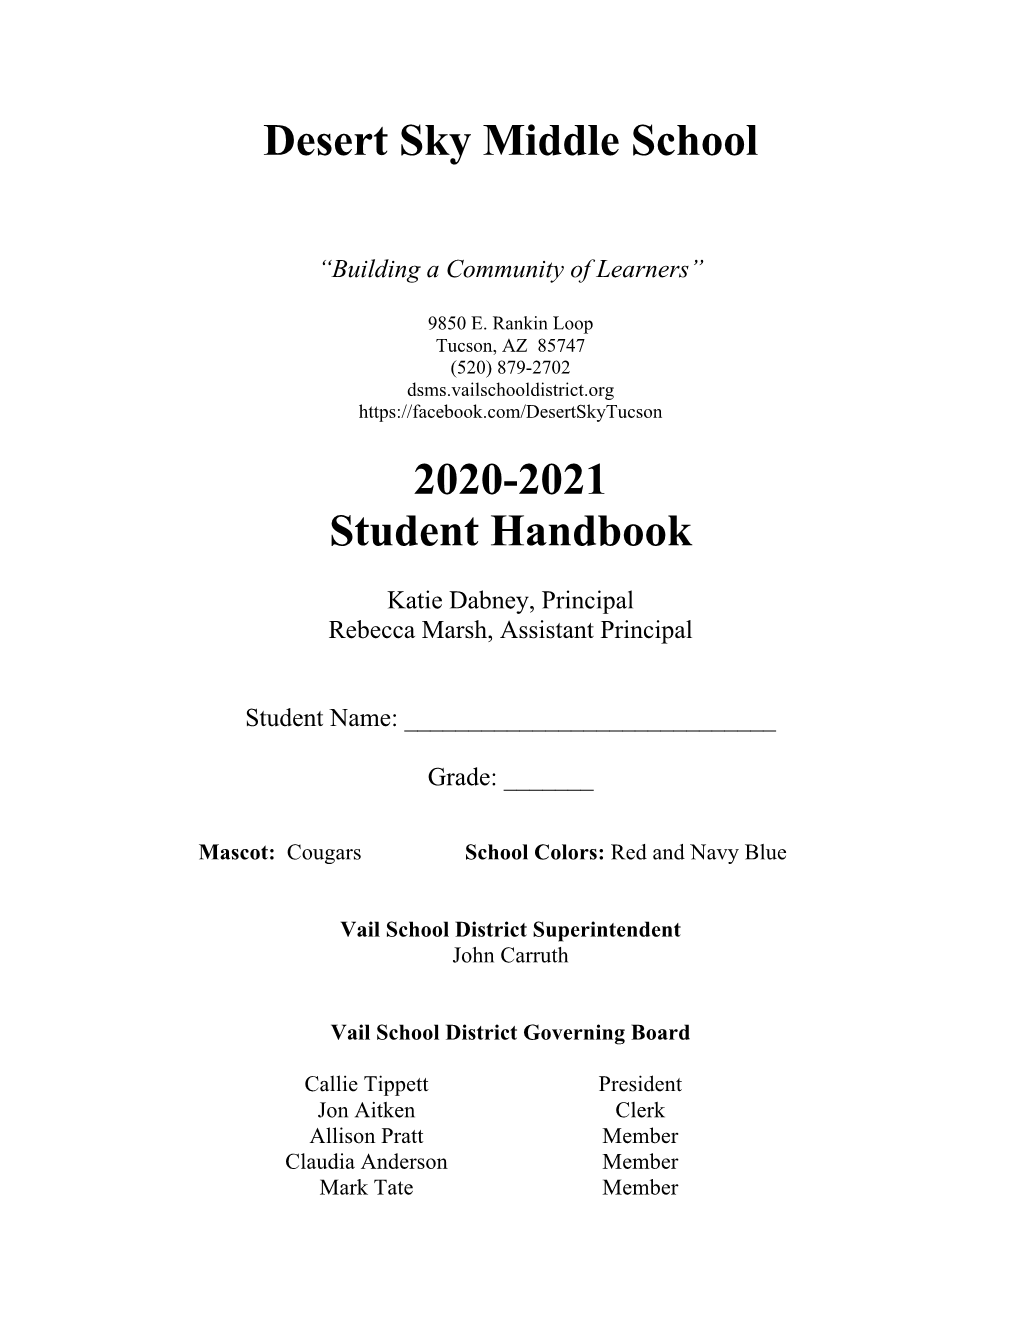 Desert Sky Middle School 2020-2021 Student Handbook